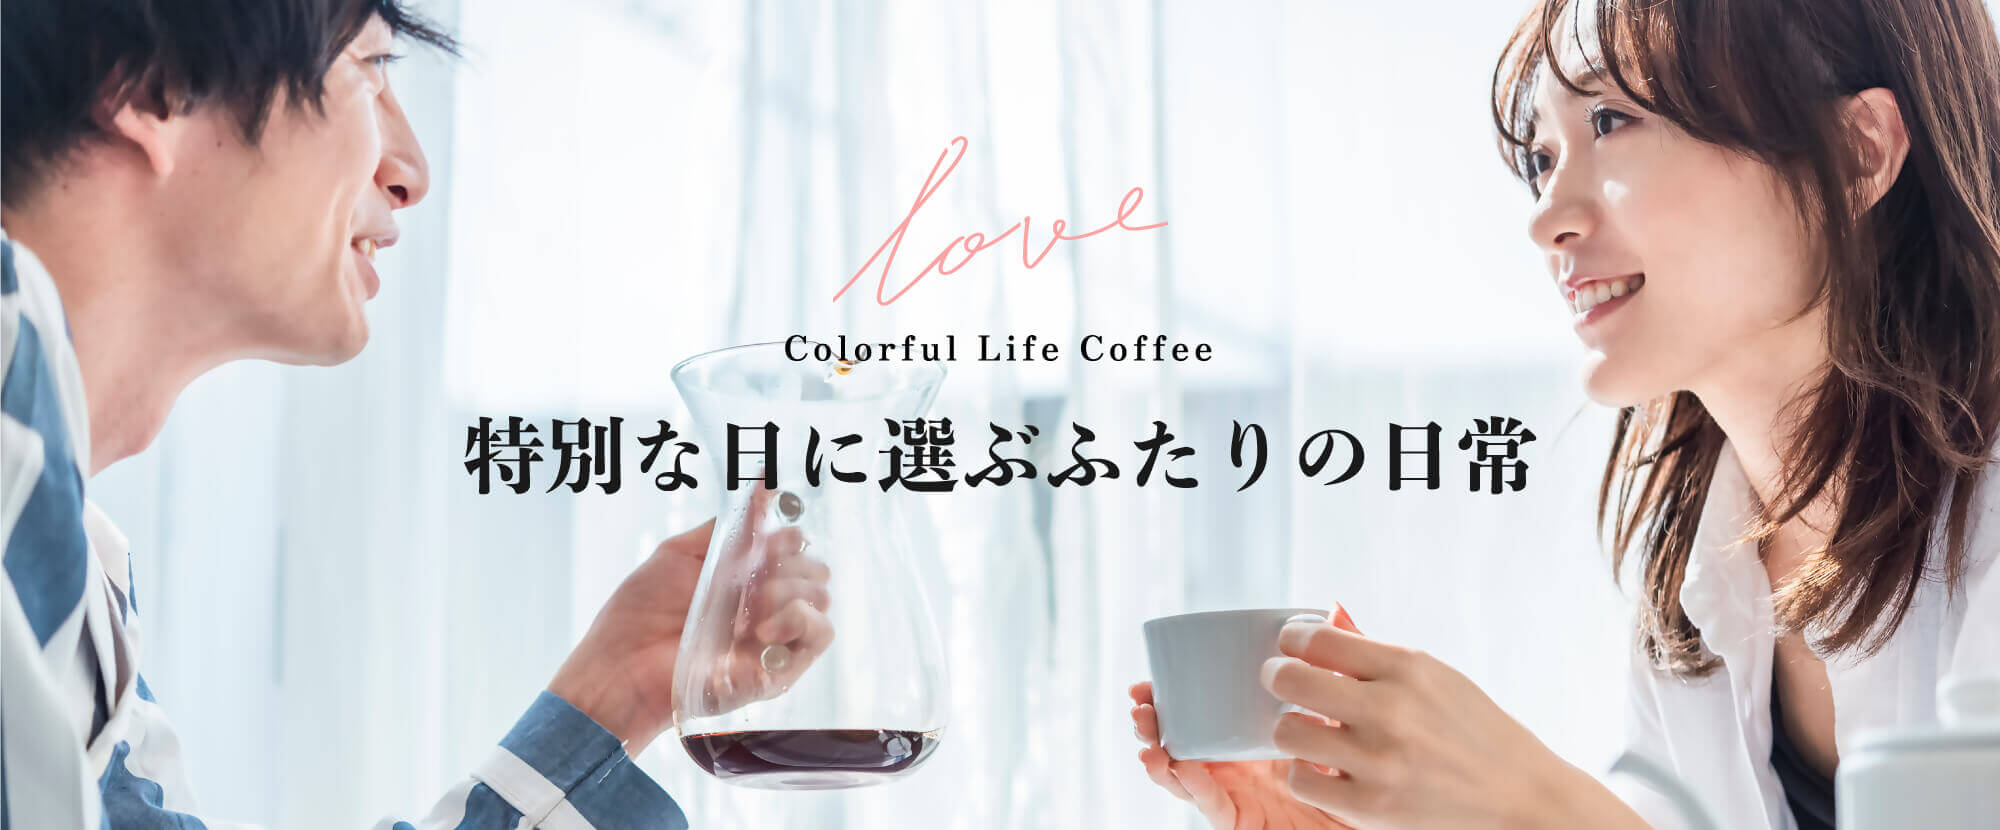 Colorful Life Coffee-特別な日に選ぶふたりの日常-